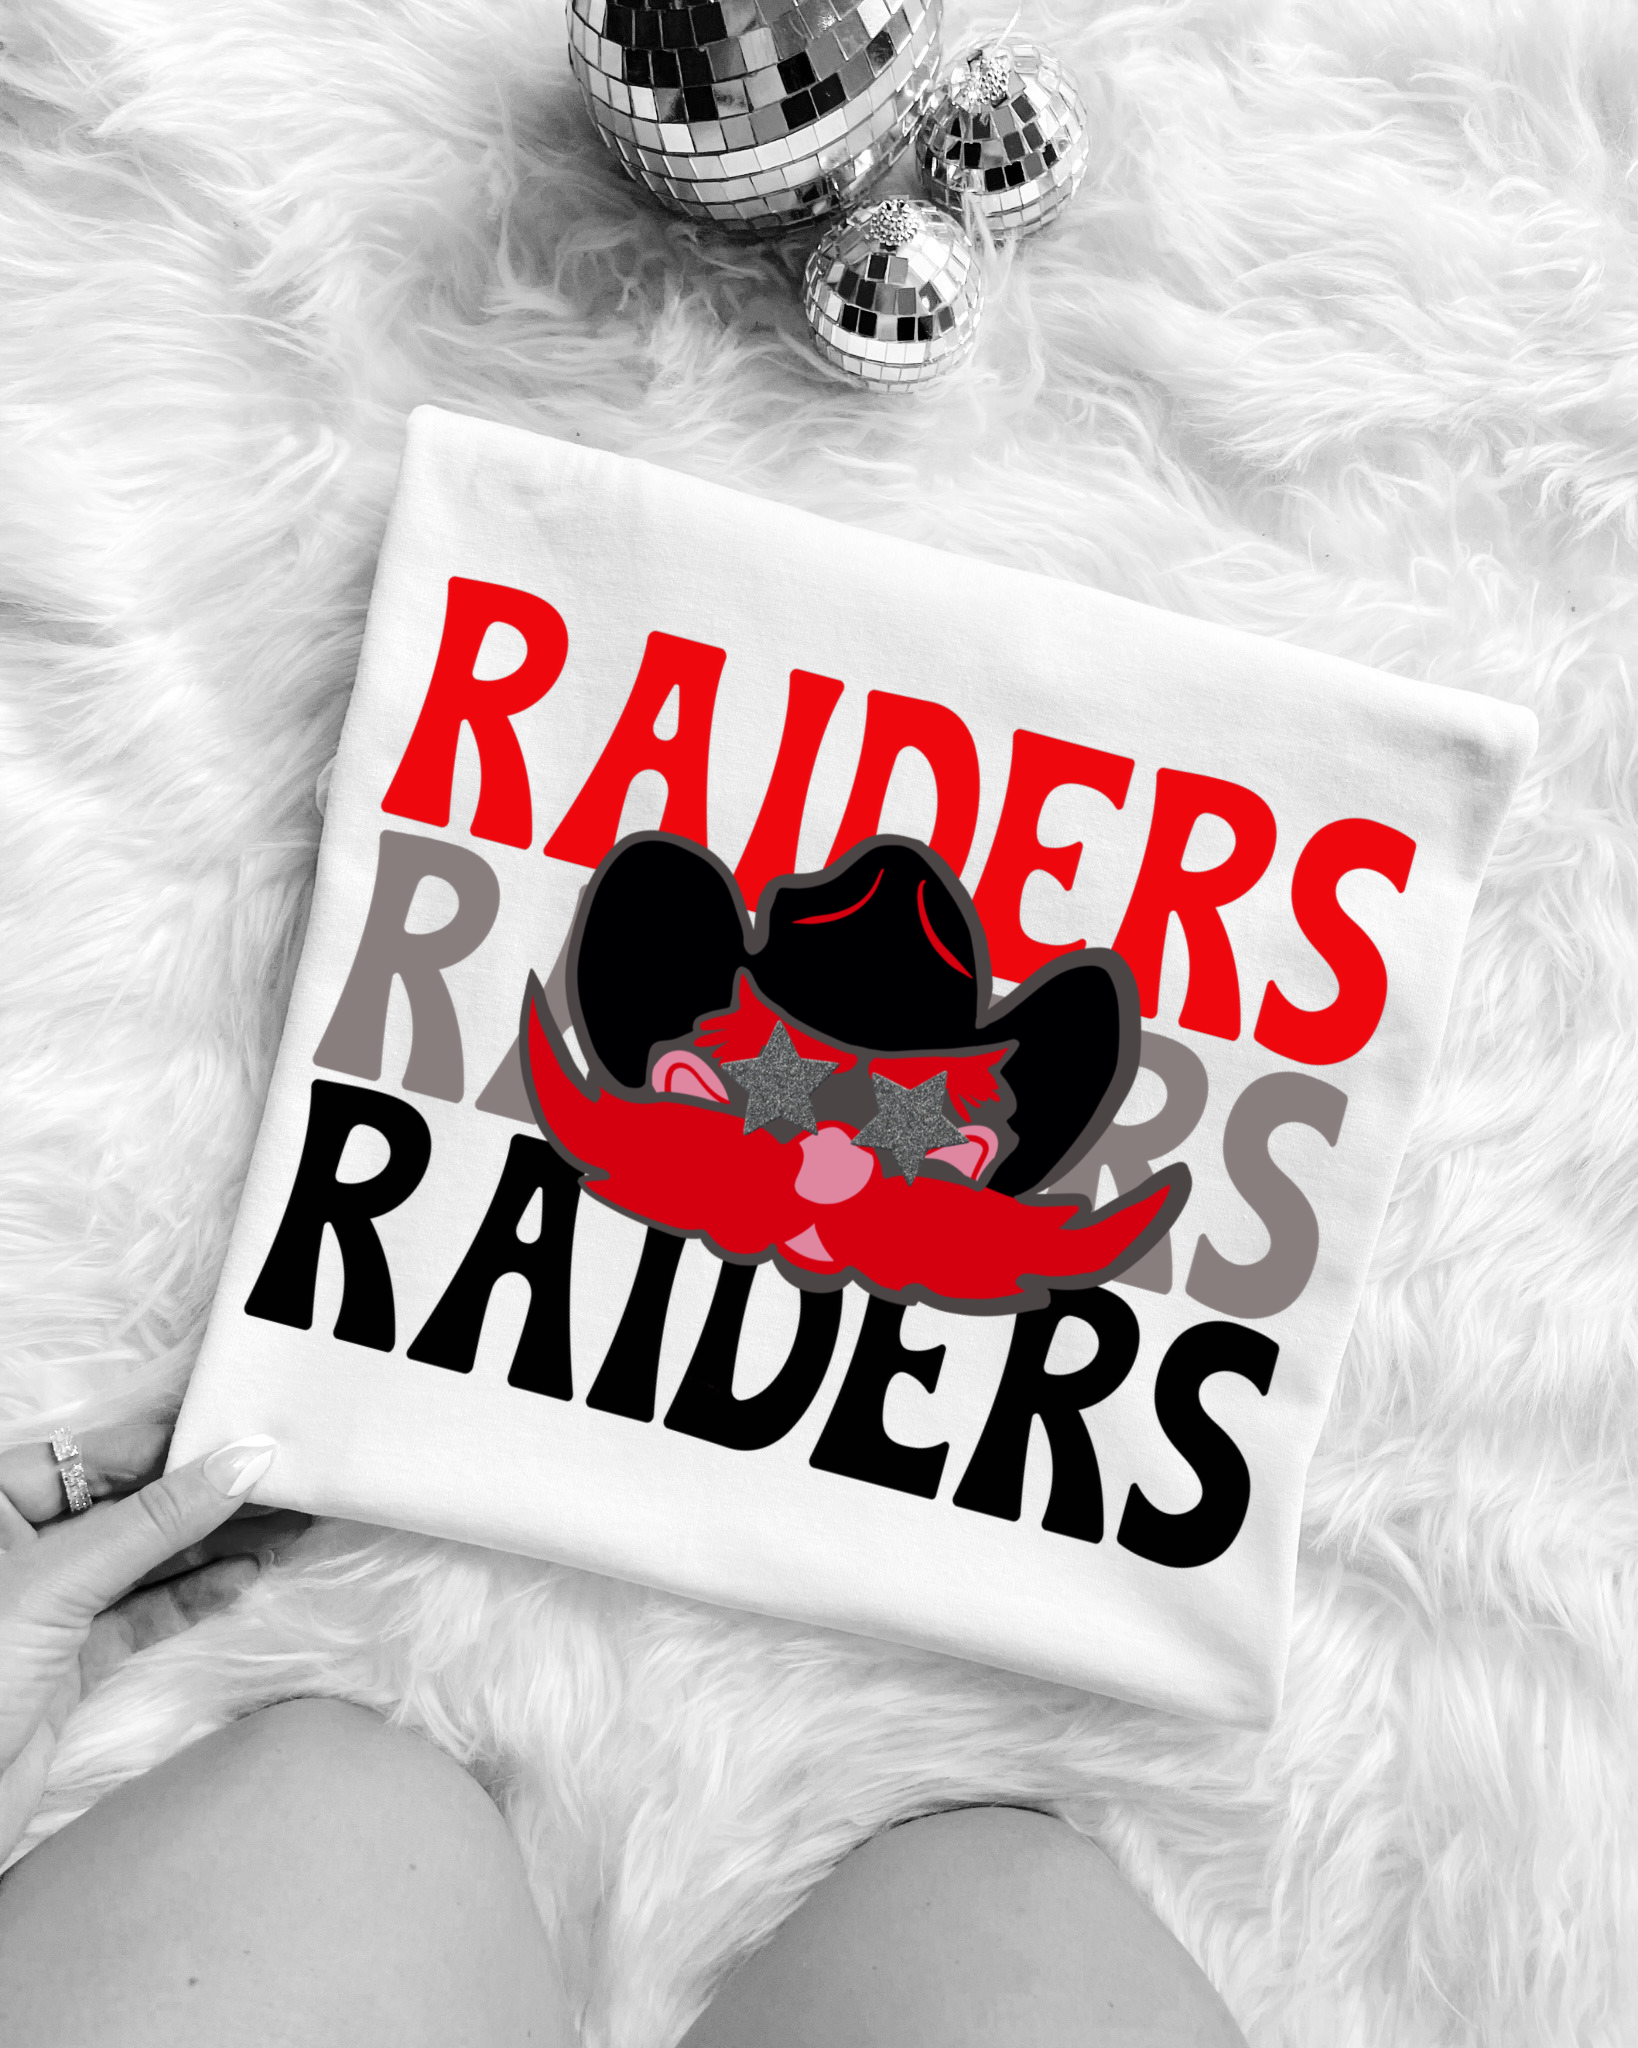 raiders shirt design